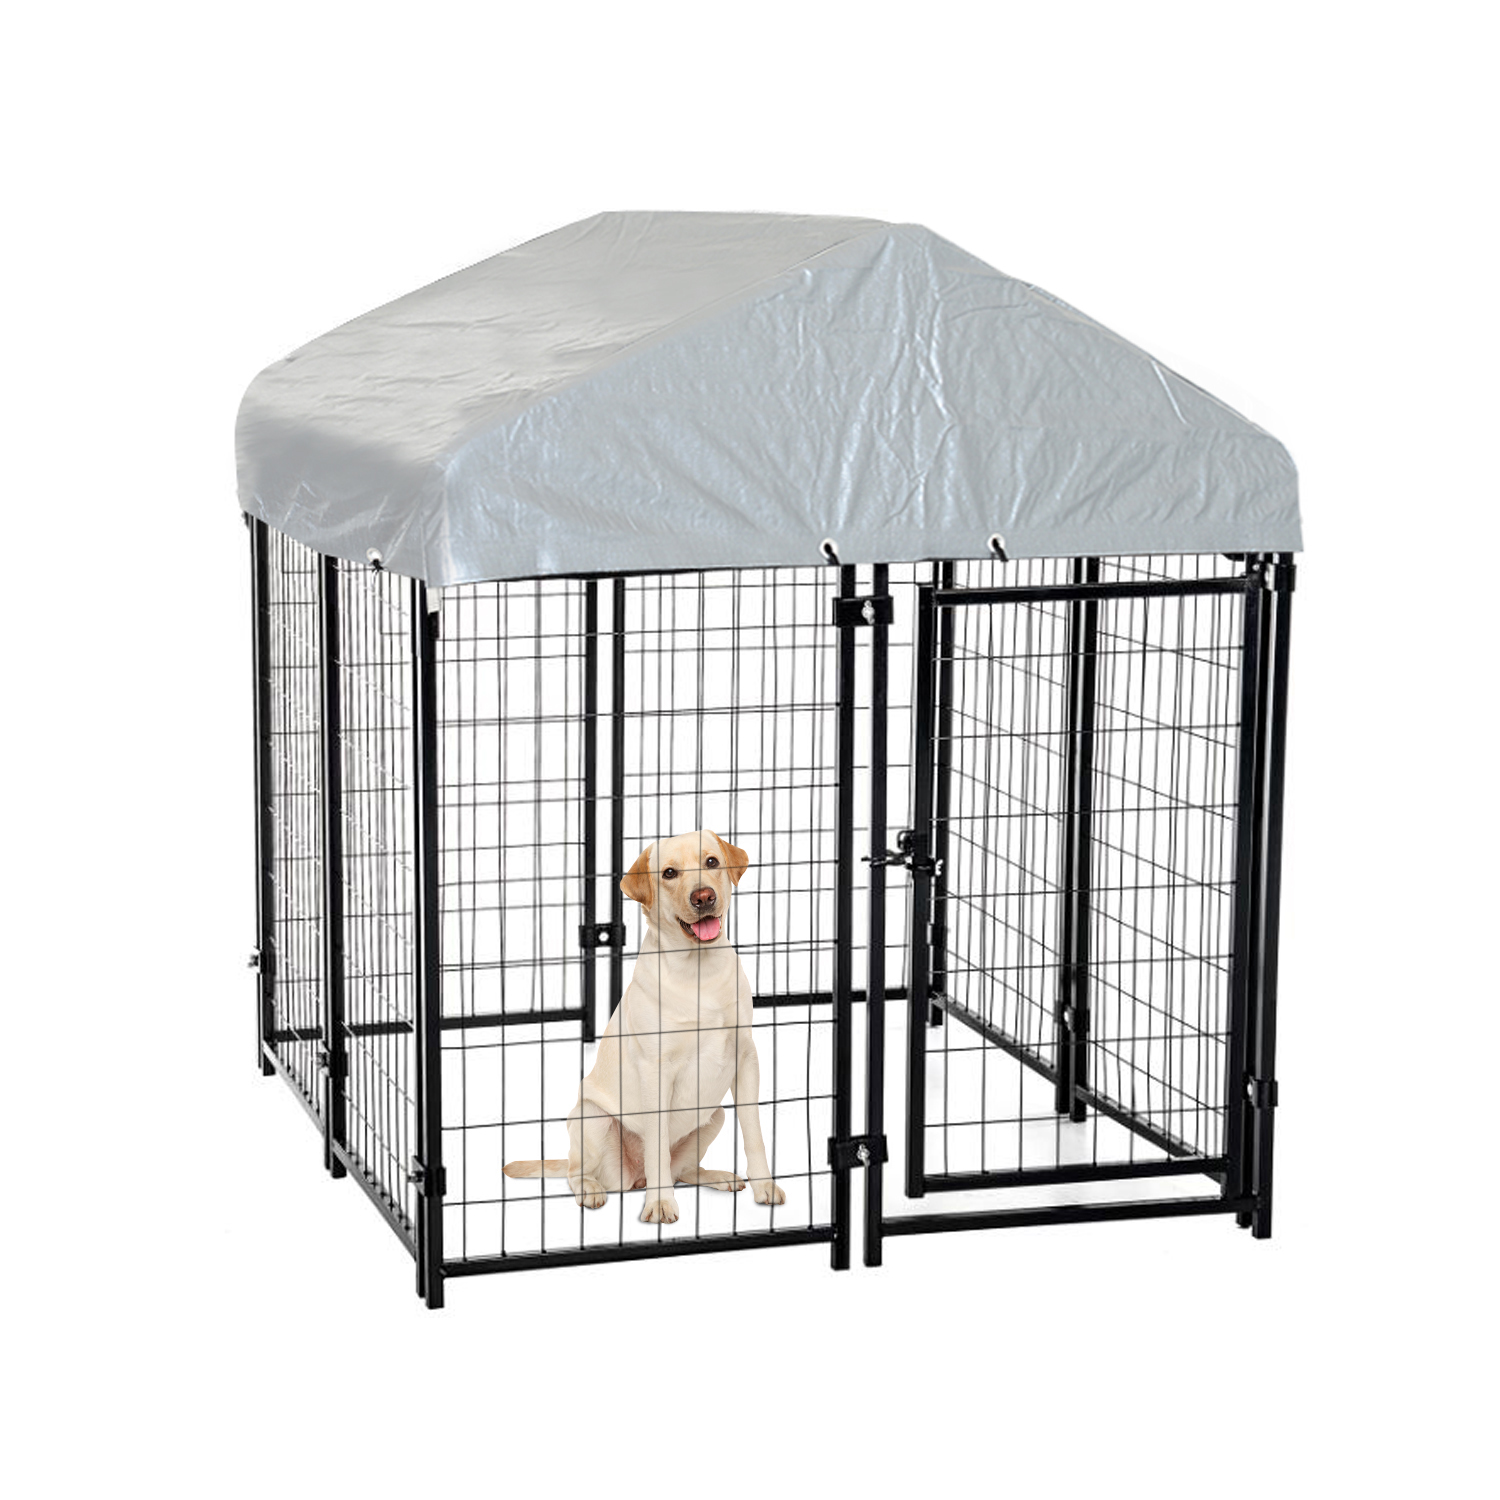 Outdoor Large Dog Cage e sebelisoa ka makhetlo a mangata bakeng sa ho bapala / ho ikoetlisa / koetliso